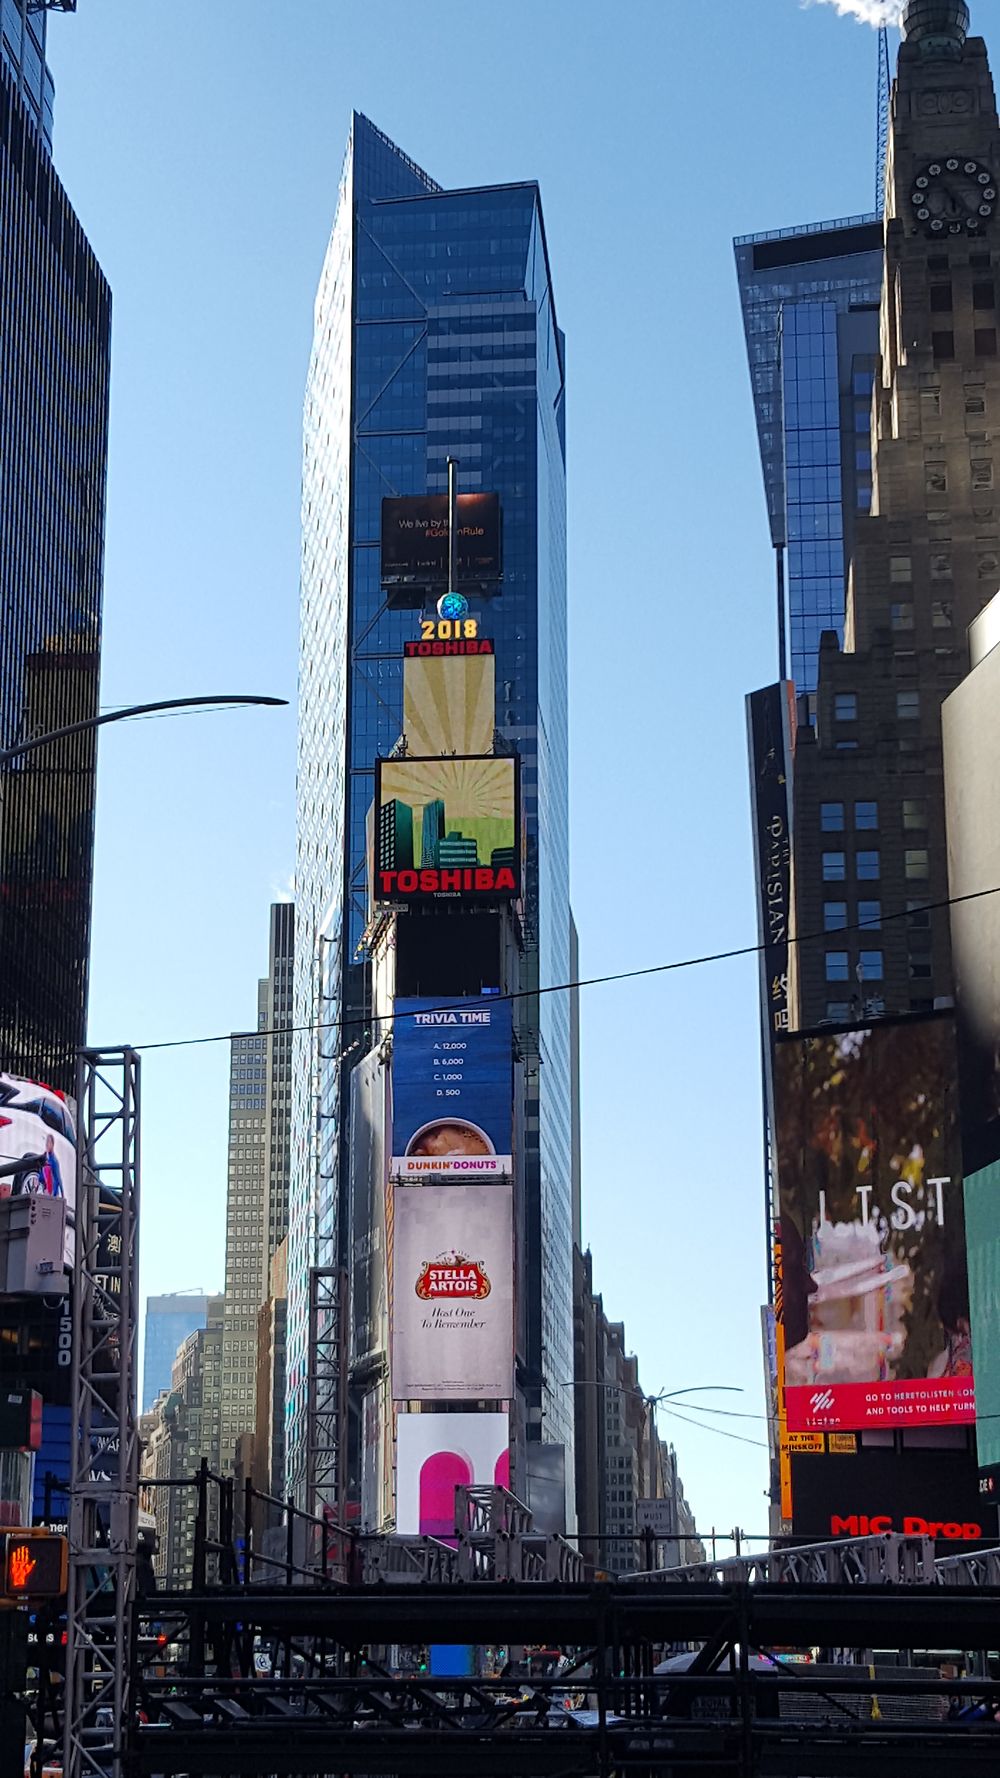 Re: Soirée nouvel an à Times Square (je cherche des idées) - taniania